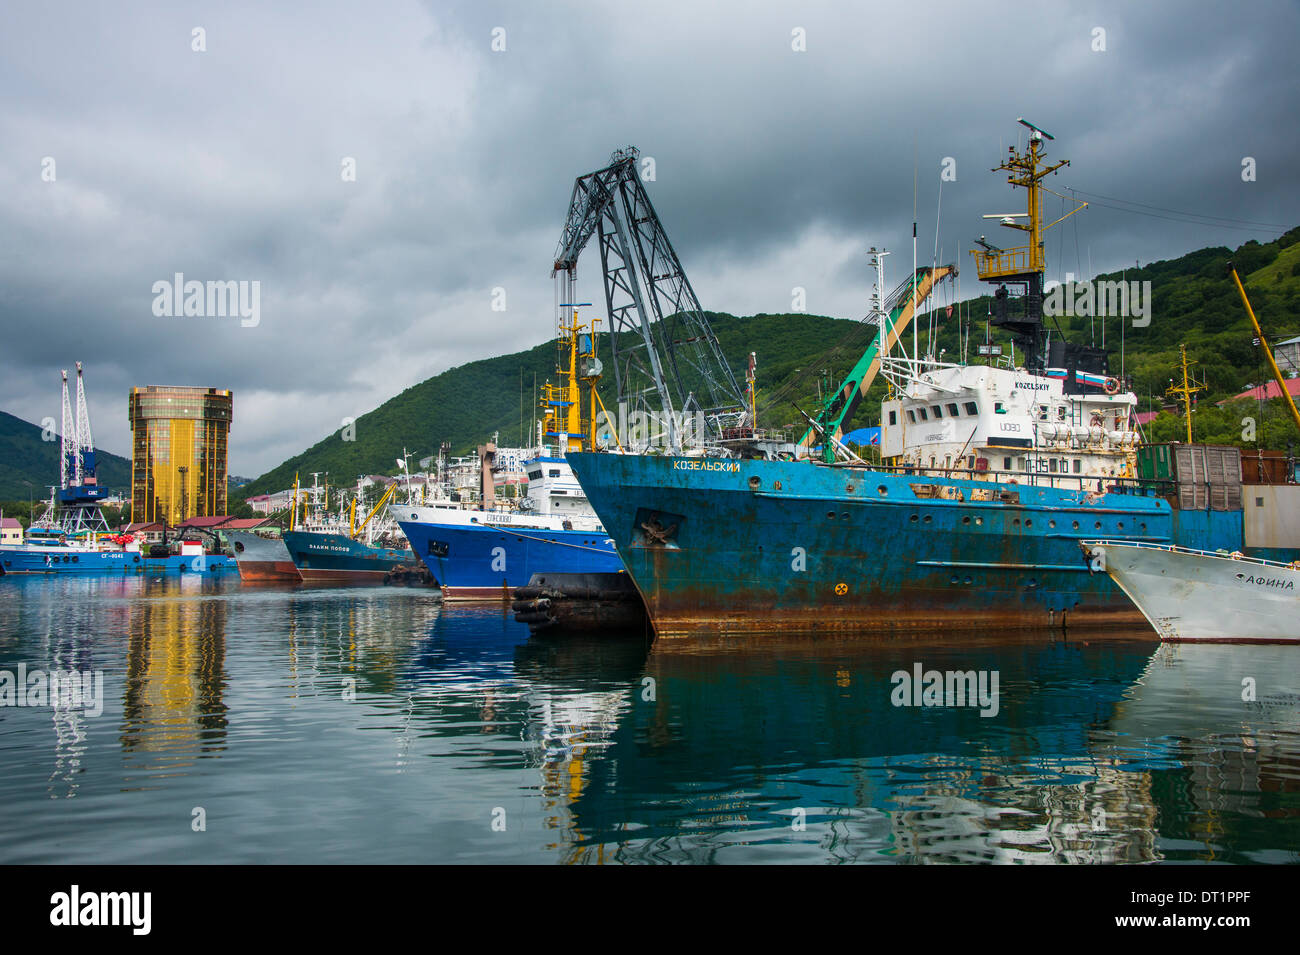 Fishing trawlers in the habour of Petropavlovsk-Kamchatsky, Kamchatka, Russia, Eurasia Stock Photo